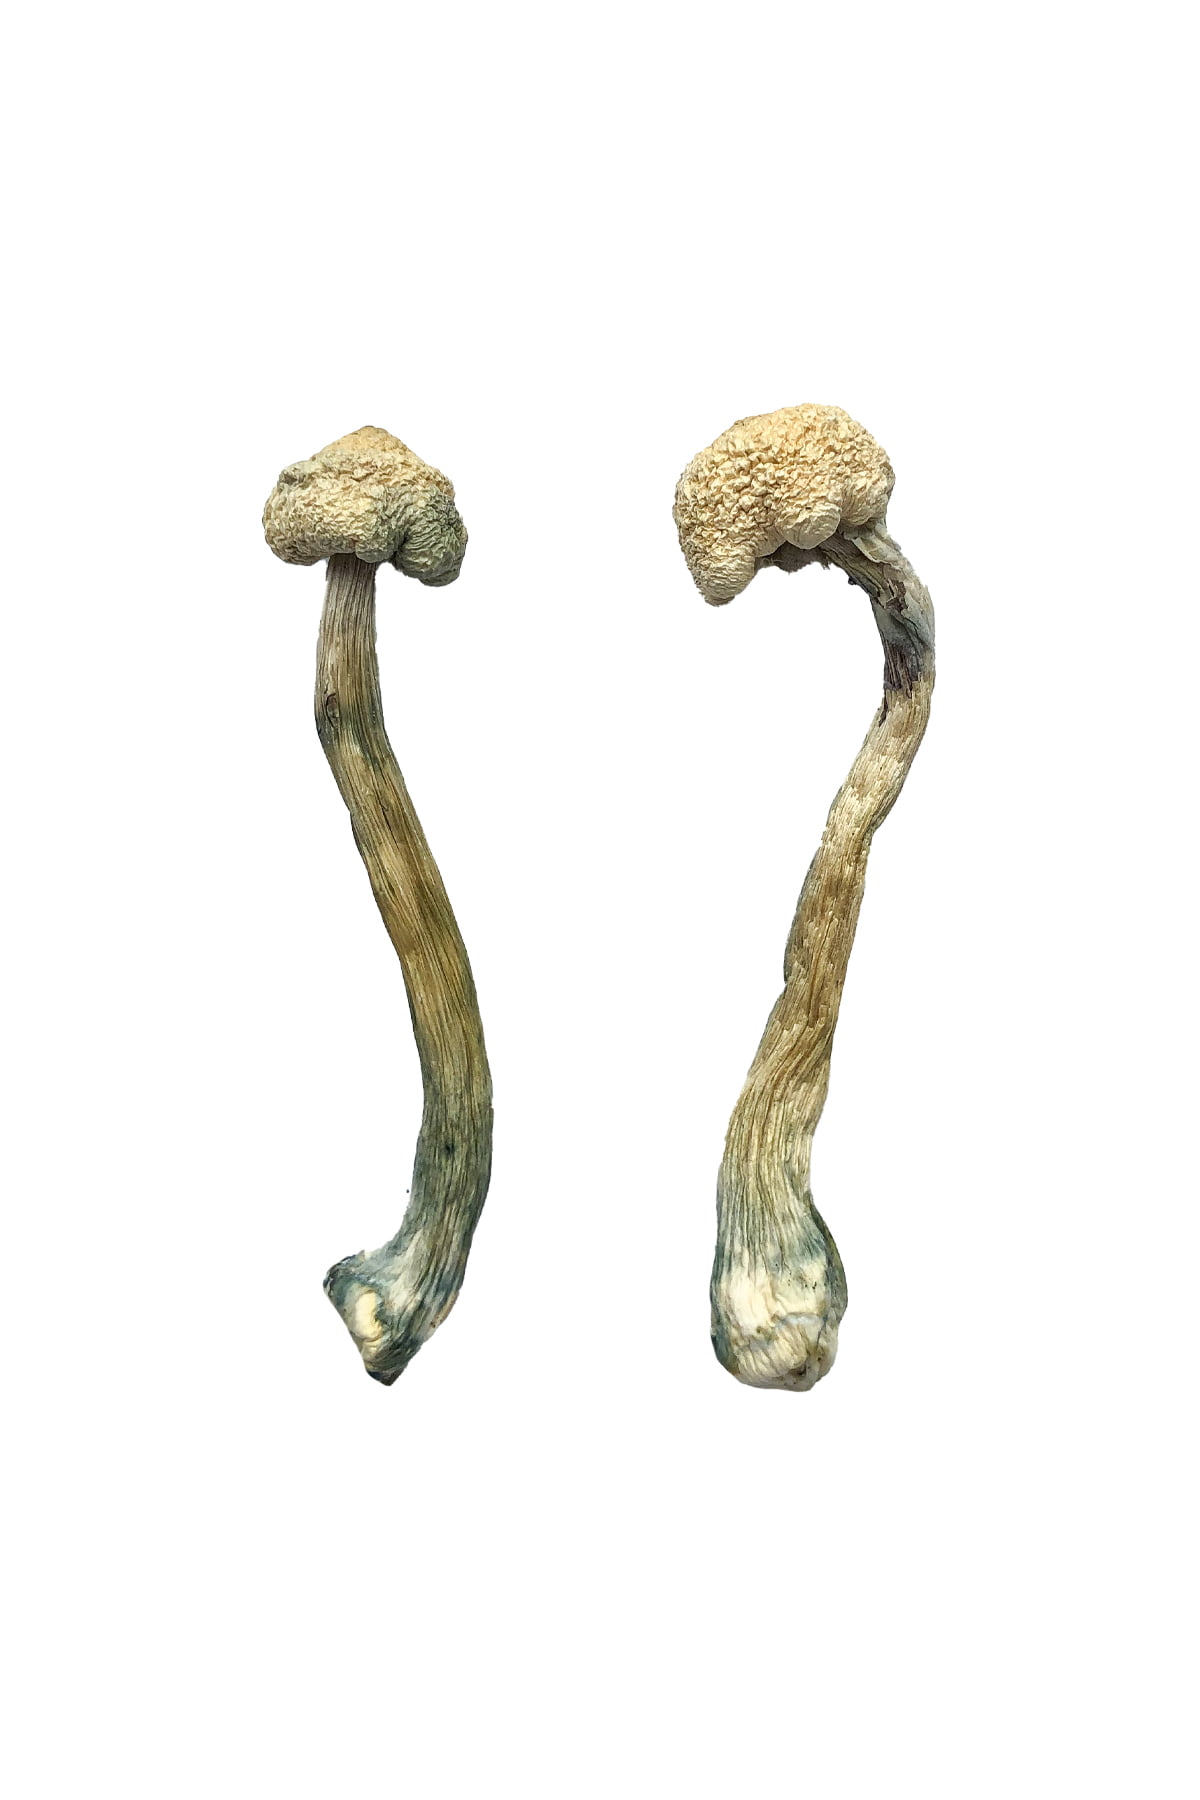 Buy Albino Treasure Coast Magic Mushrooms Online | Magic Mushrooms Dispensary